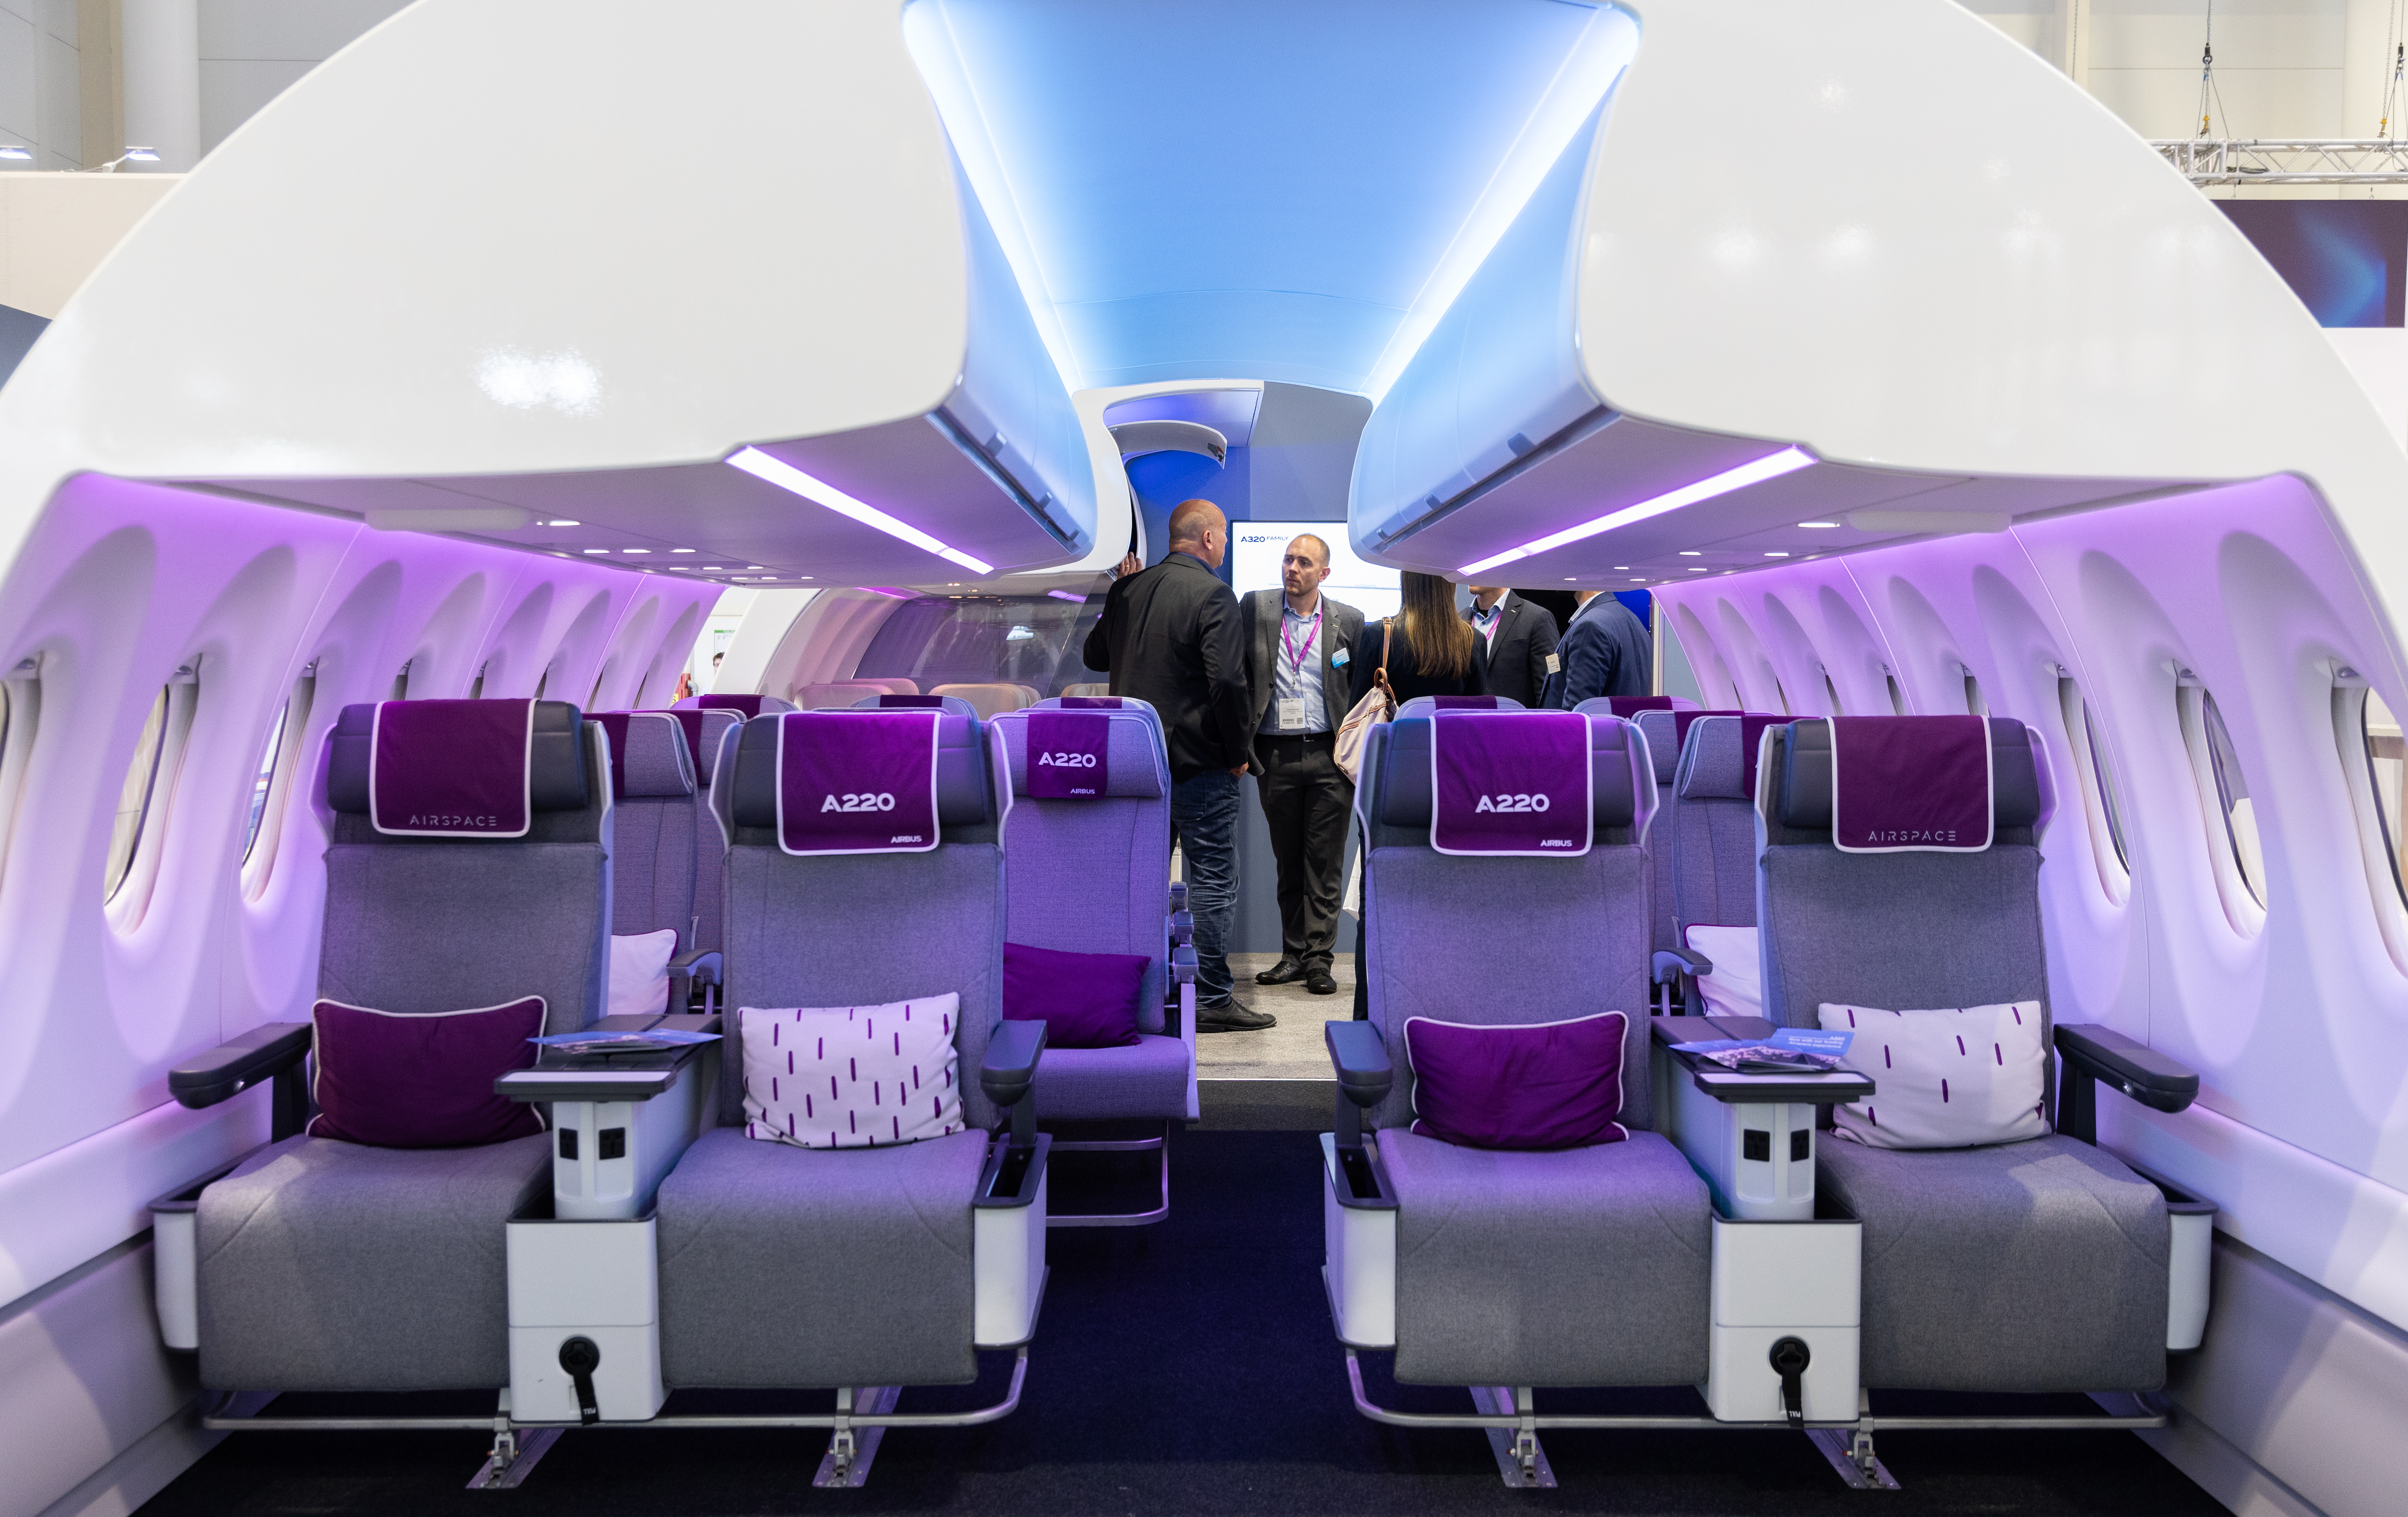 Airbus cabin interior